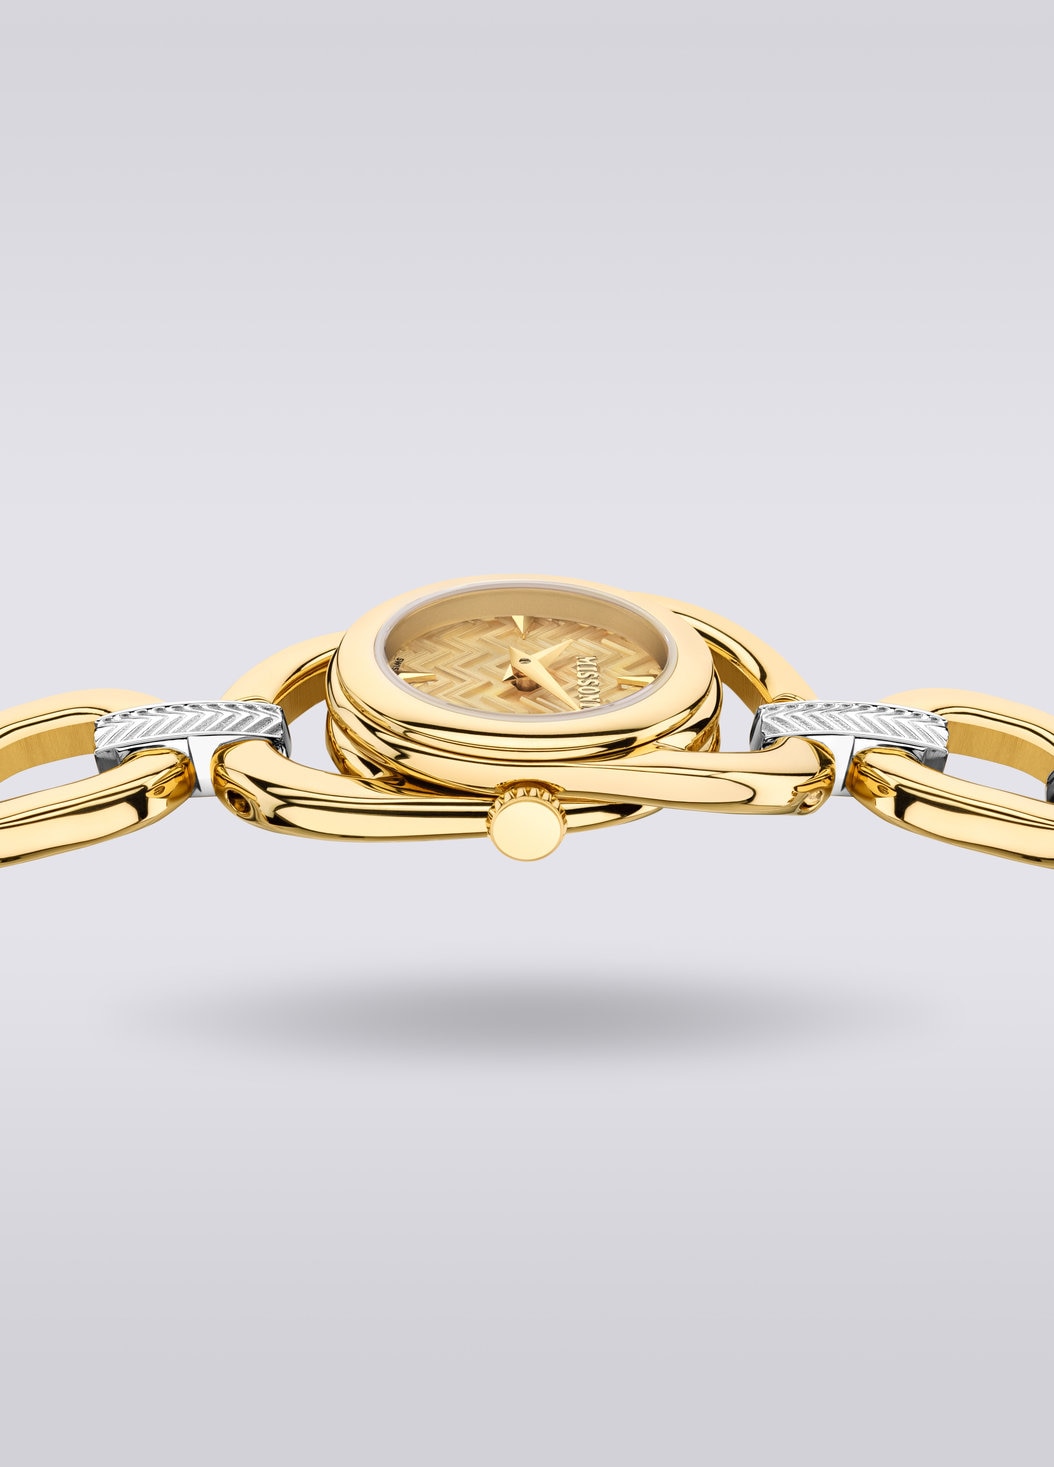 Missoni Gioiello Chain 22,8 MM case size watch, Multicoloured  - 8053147046198 - 3